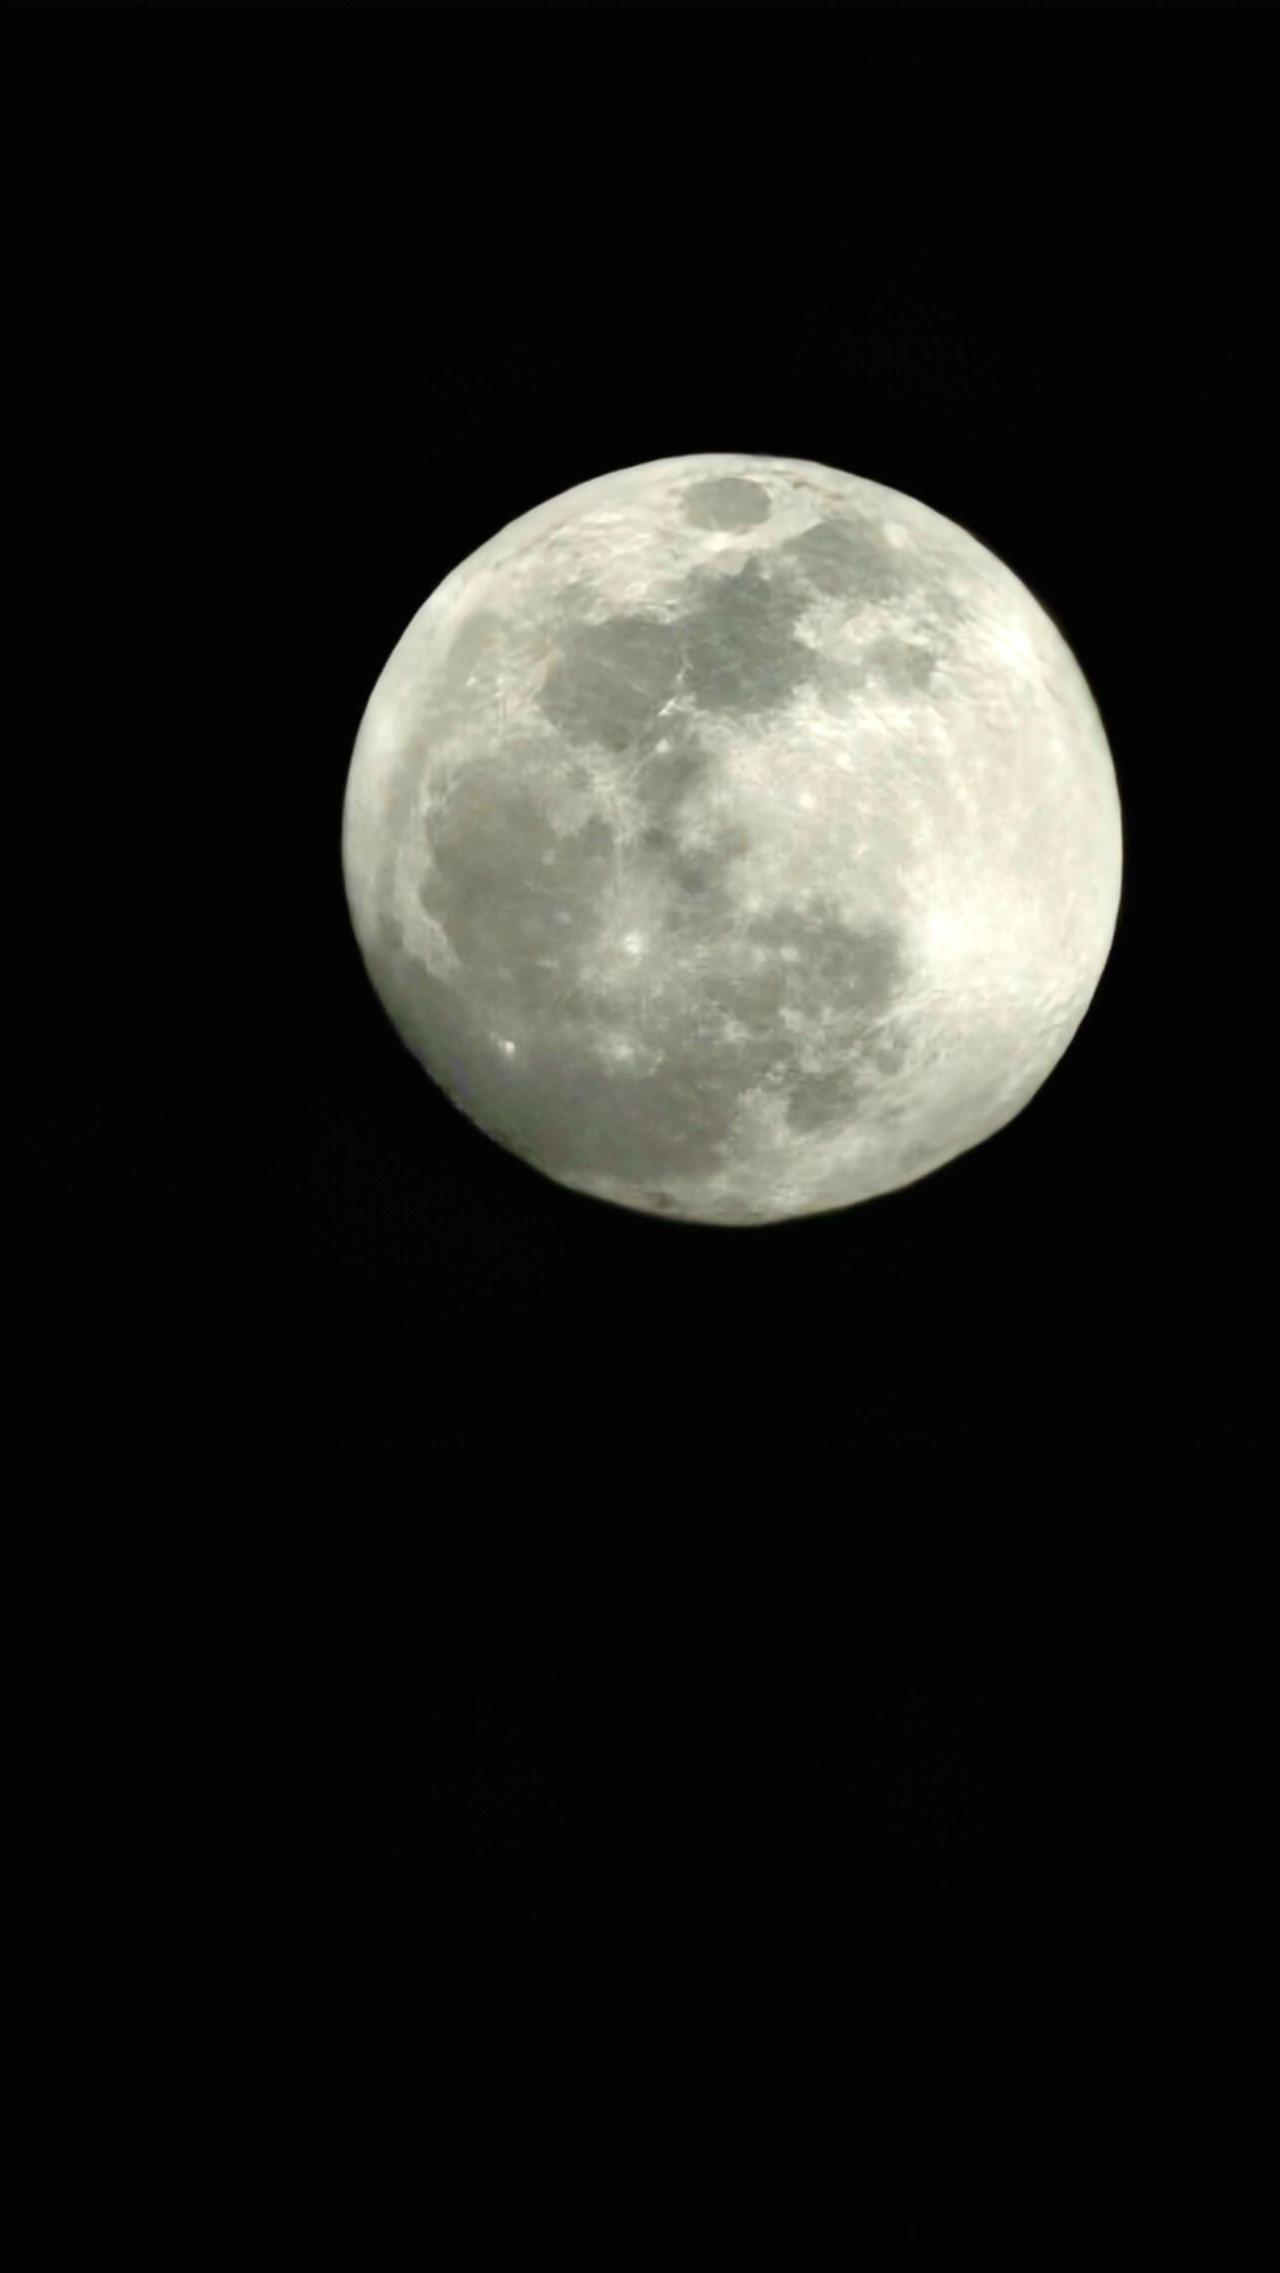 Nombre:  luna.jpg
Visitas: 21
Tamaño: 74.7 KB